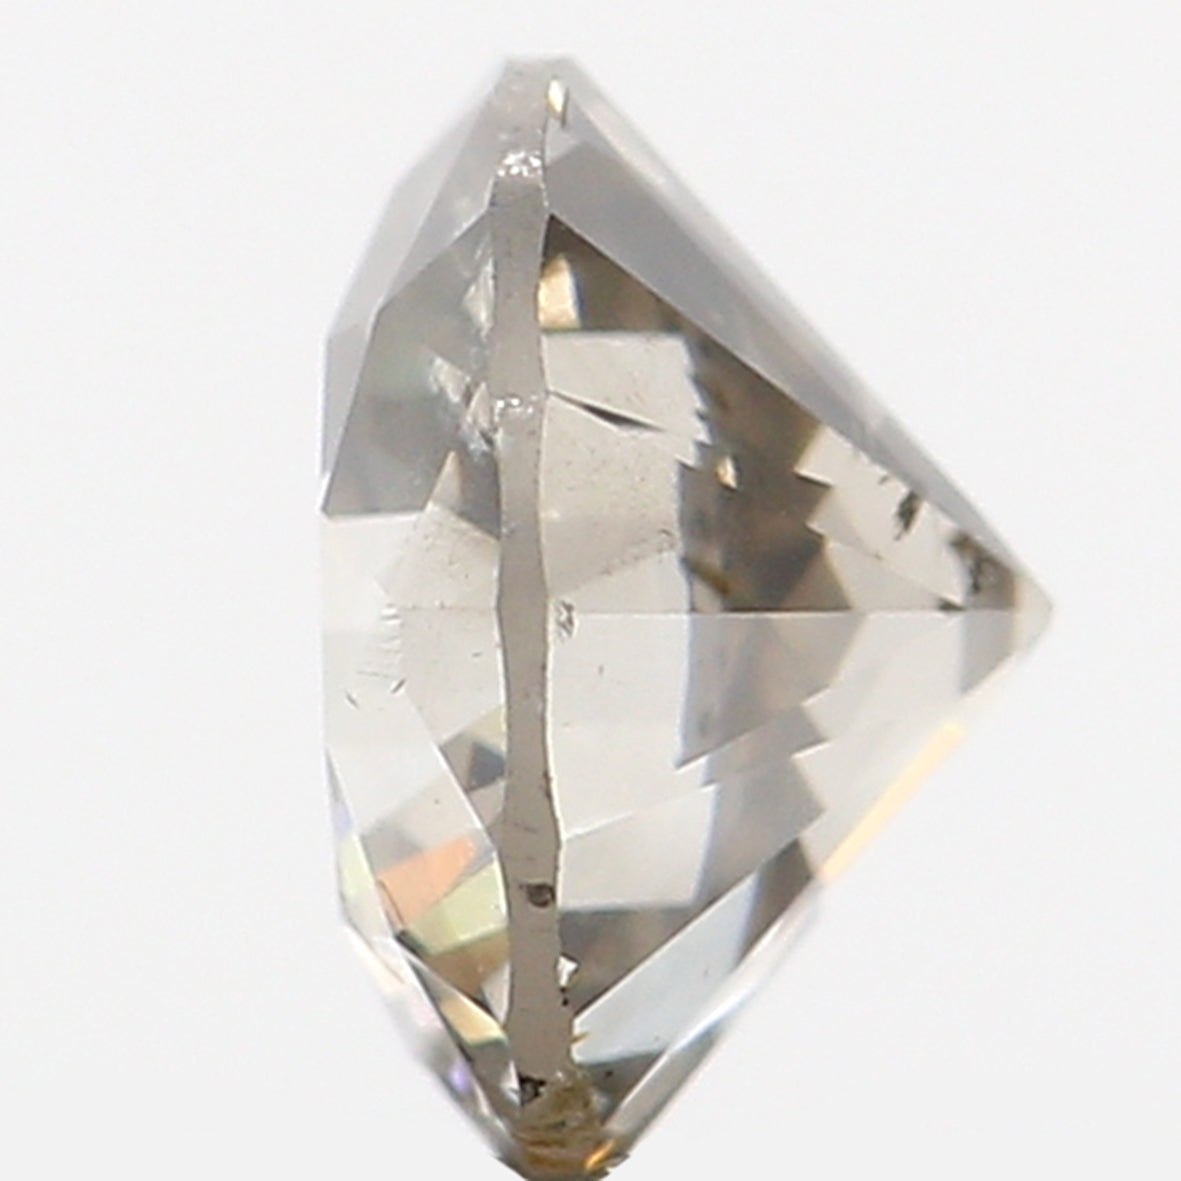 0.50 Ct Natural Loose Diamond, Fancy Grey Diamond, Round Diamond, Round Brilliant Cut Diamond, Sparkling Diamond, Rustic Diamond L5098